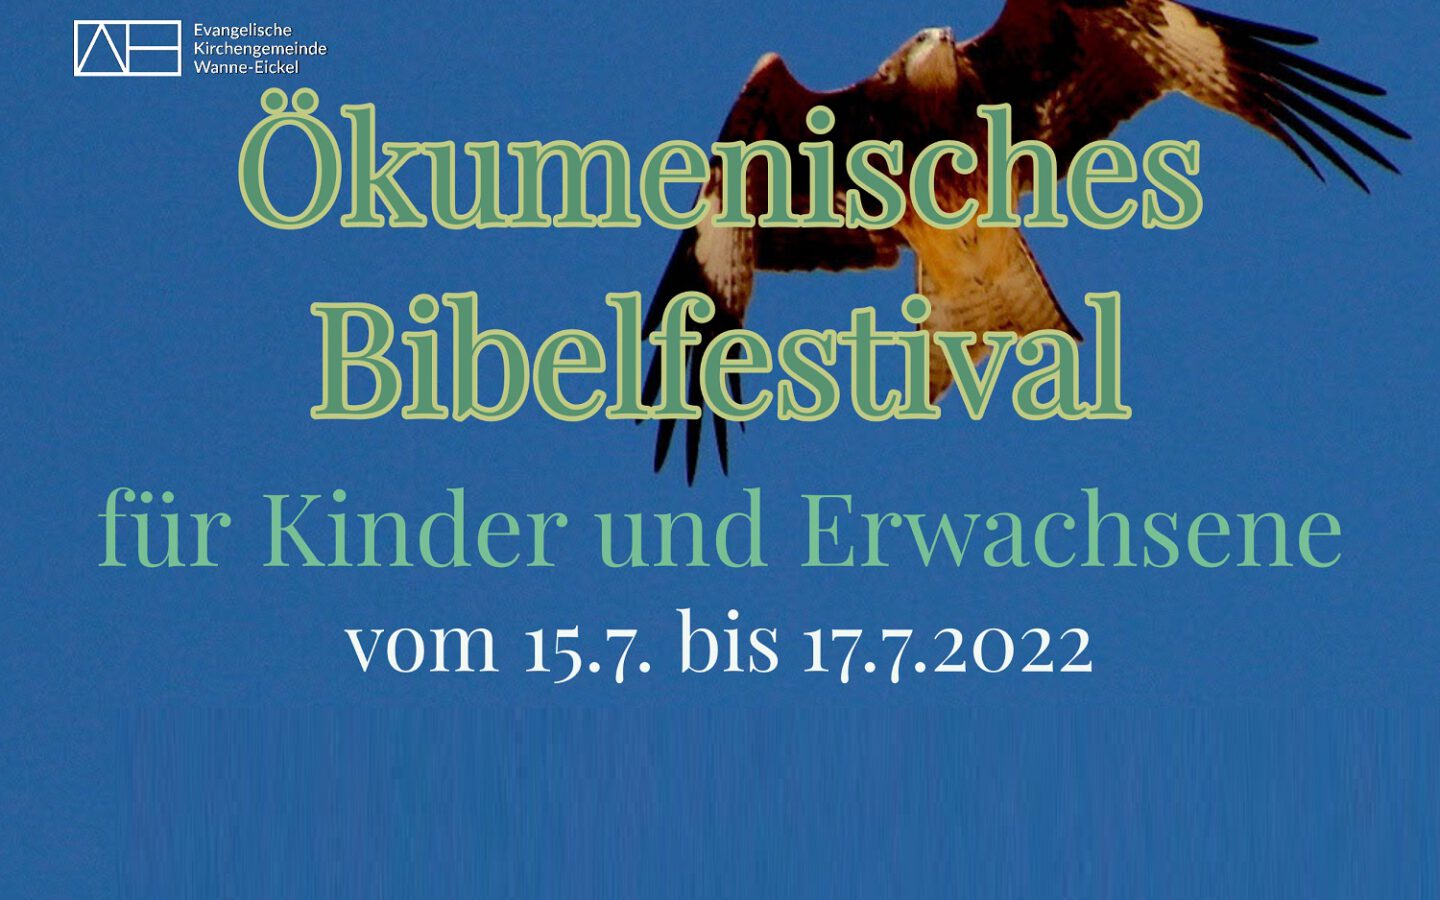 Ökumenisches Bibelfestival in Röhlinghausen (15.-17.07.2022)